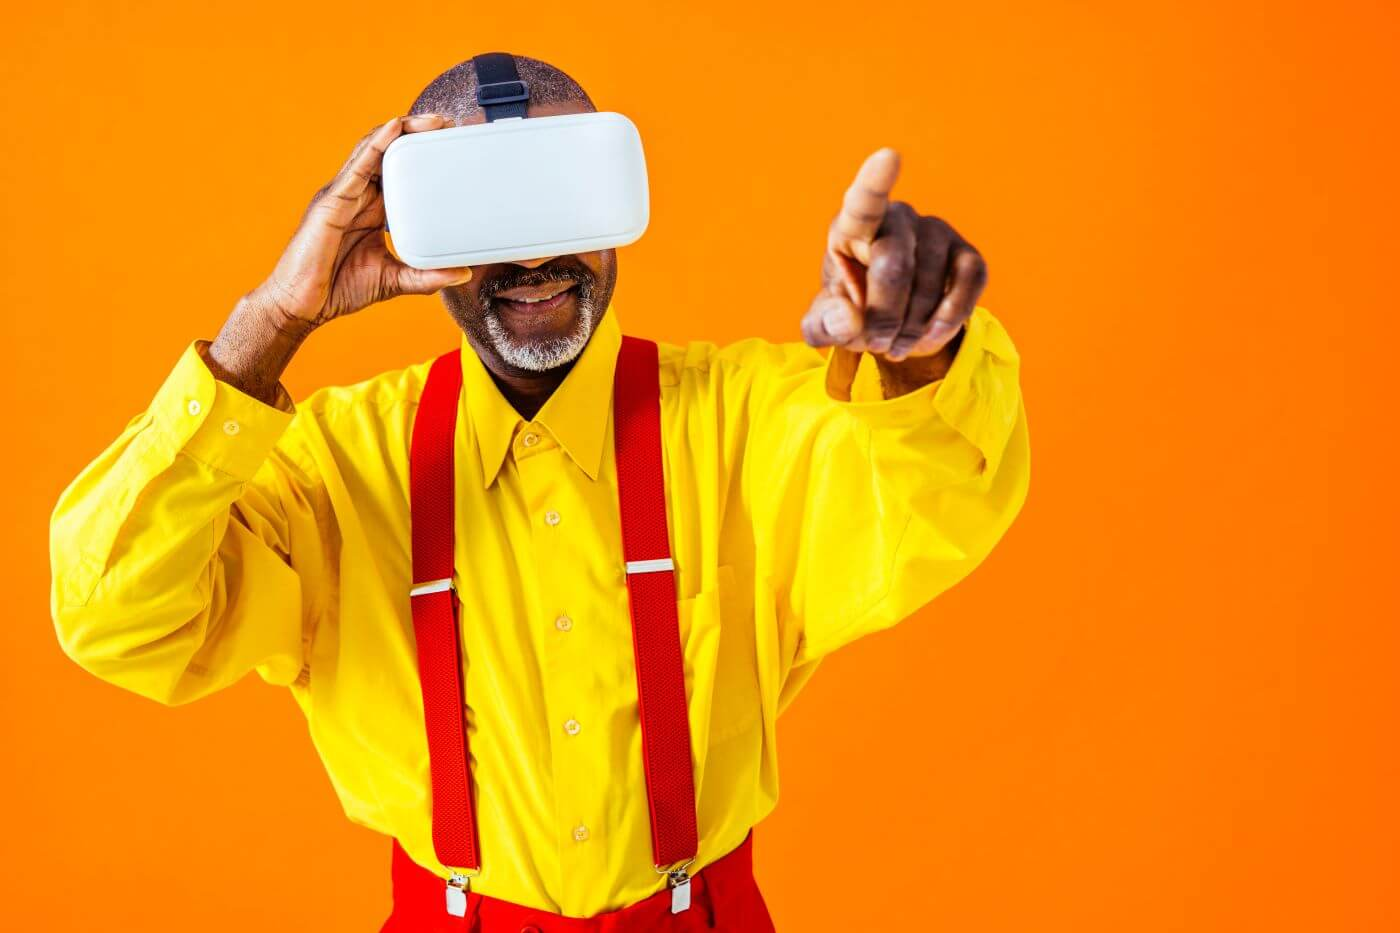 Les meilleures applications et jeux pour faire découvrir la VR aux personnes âgées